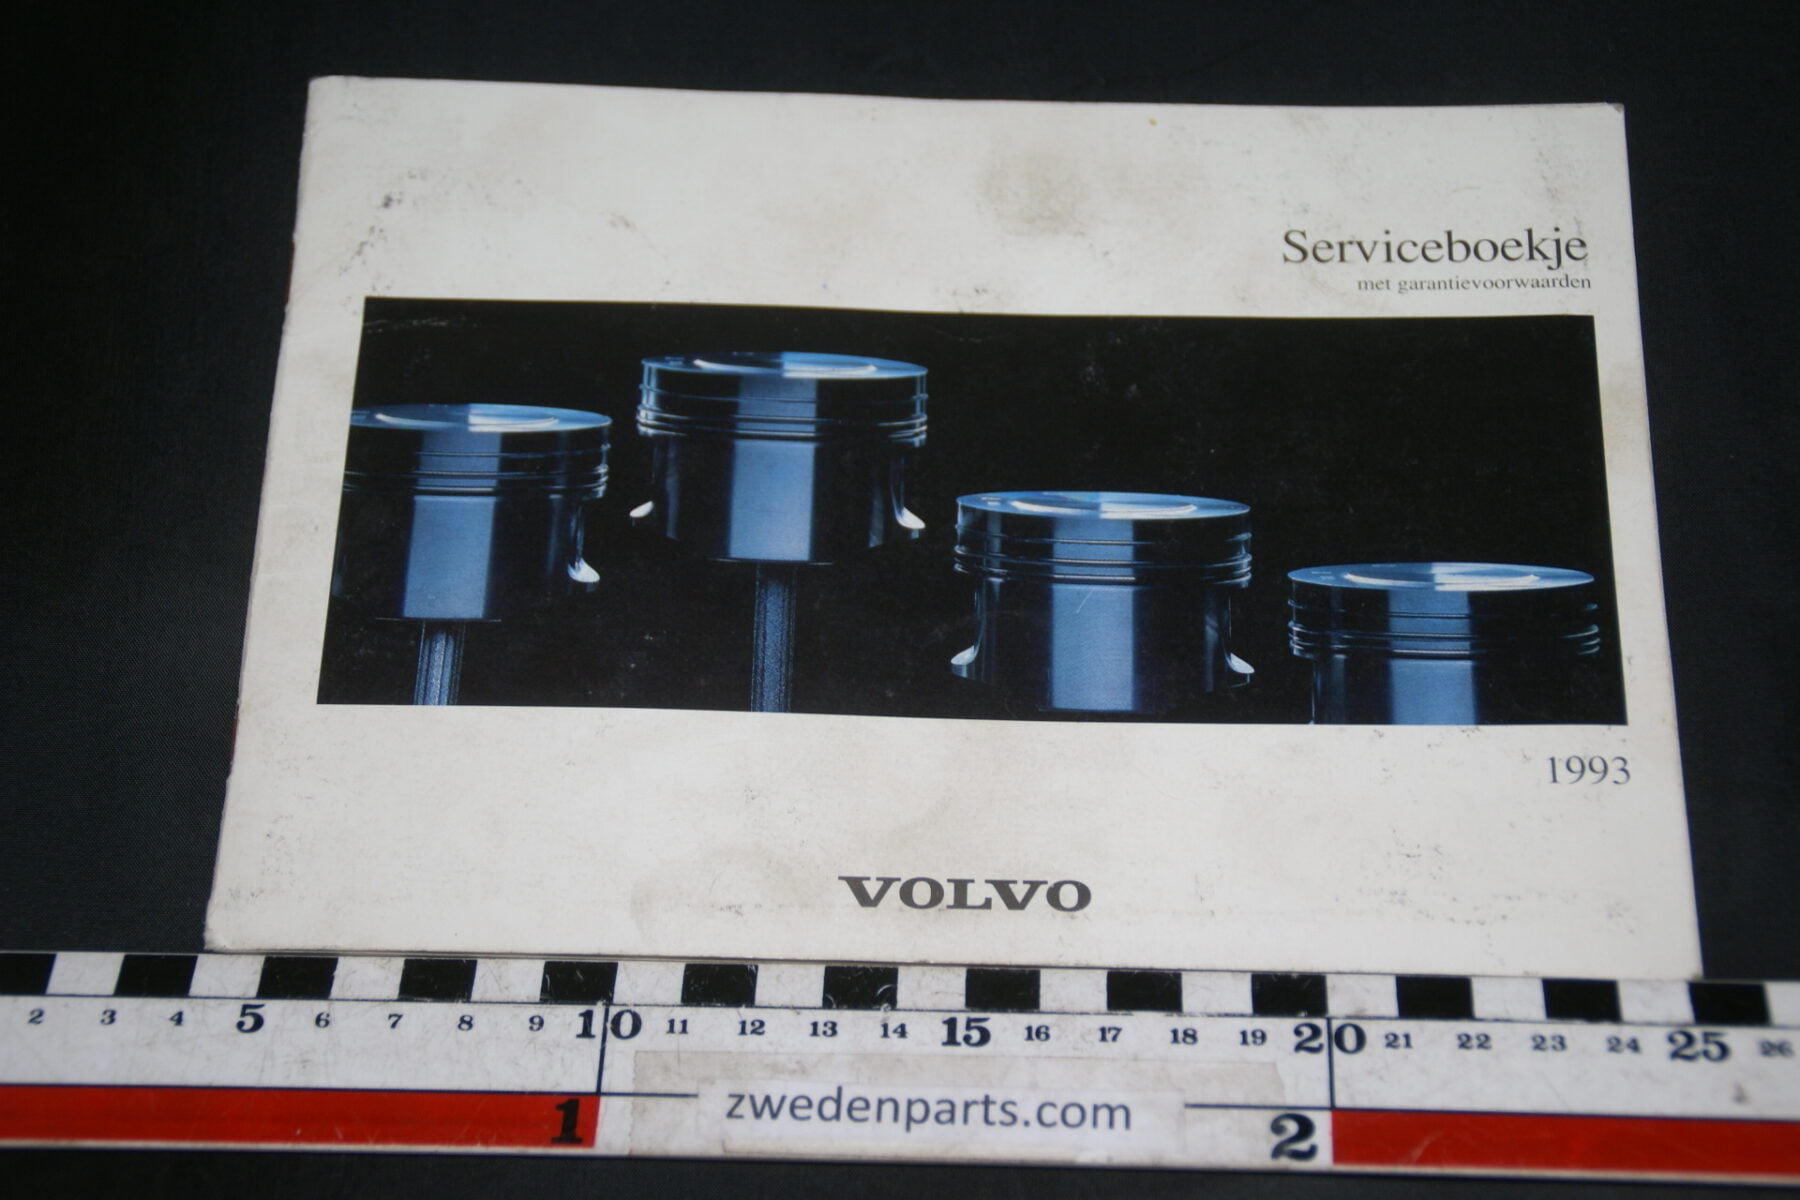 DSC02410 1993 Volvo serviceboekje TP86169.1